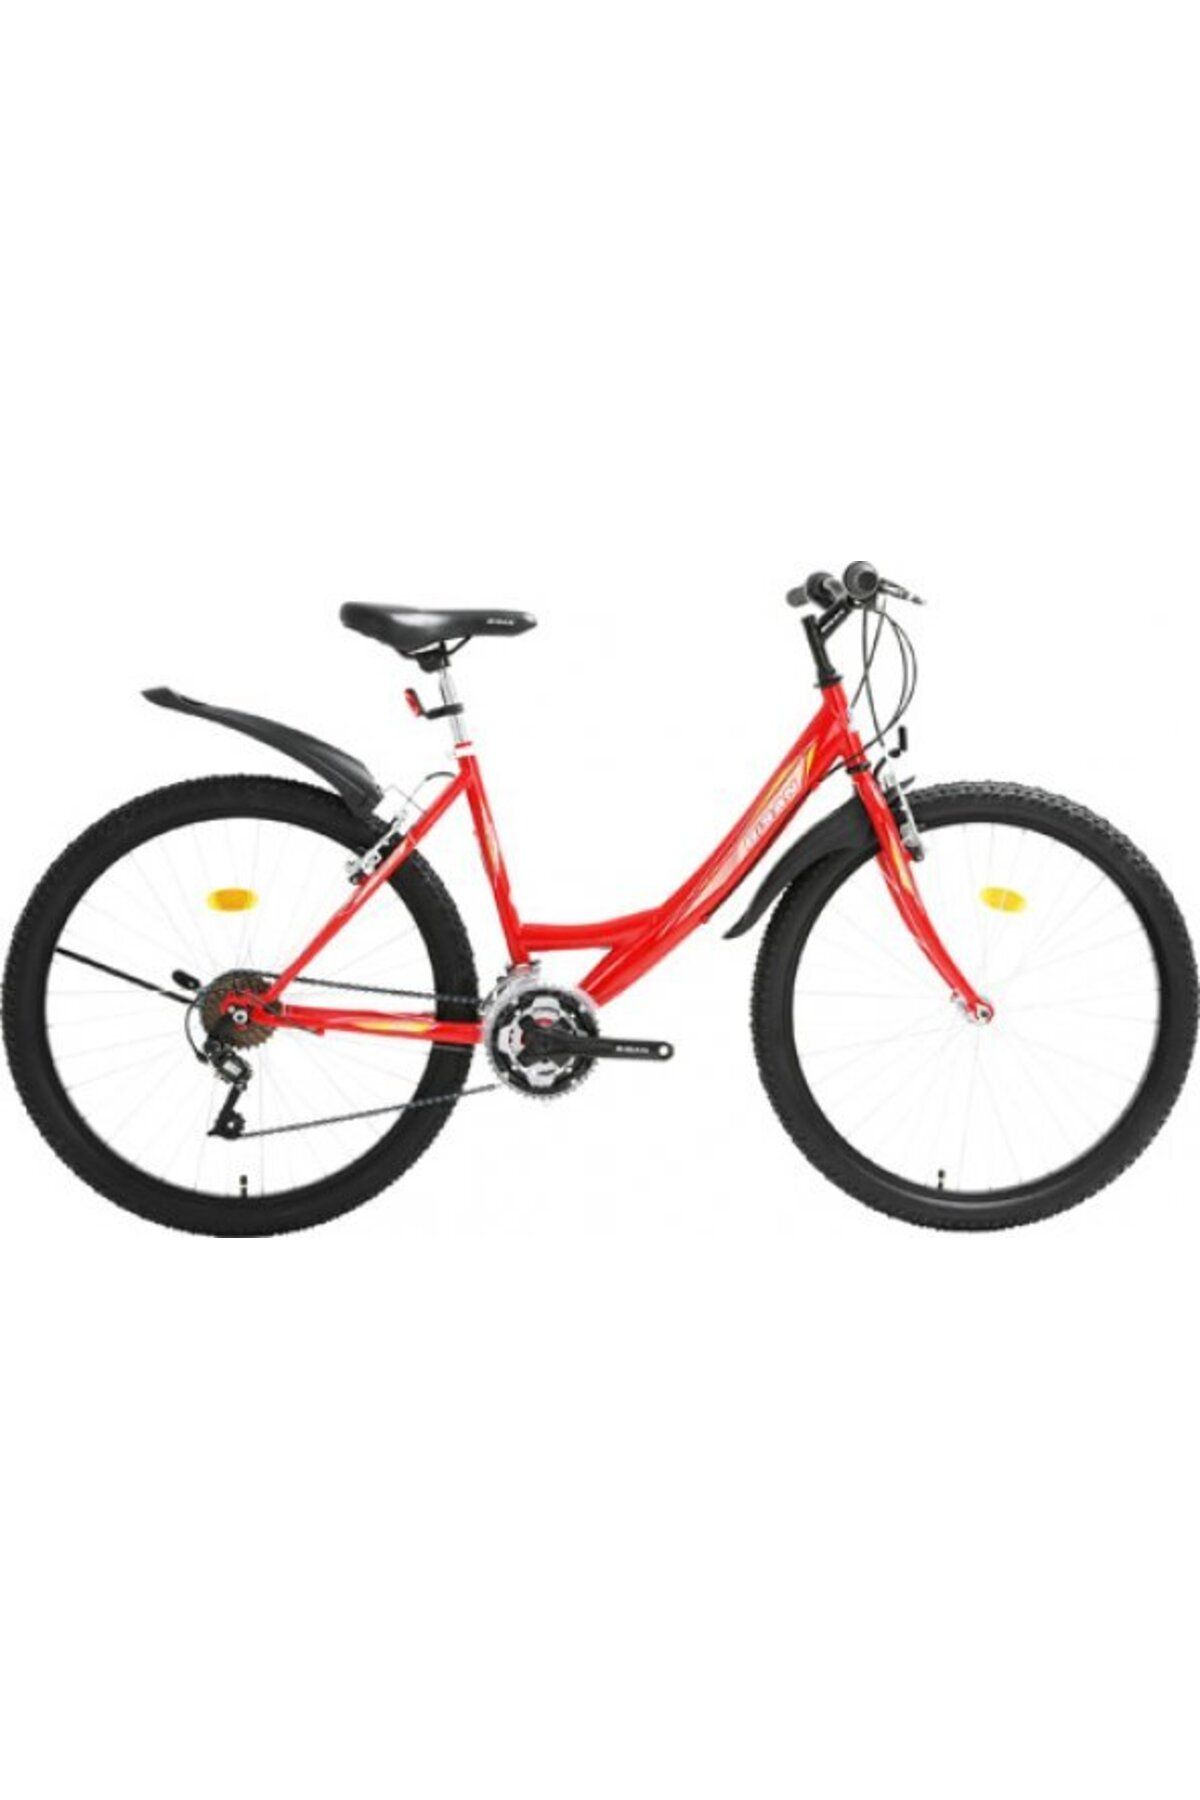 Bisan Sentıero-22 24 Jant Bisiklet Kırmızı Beyaz